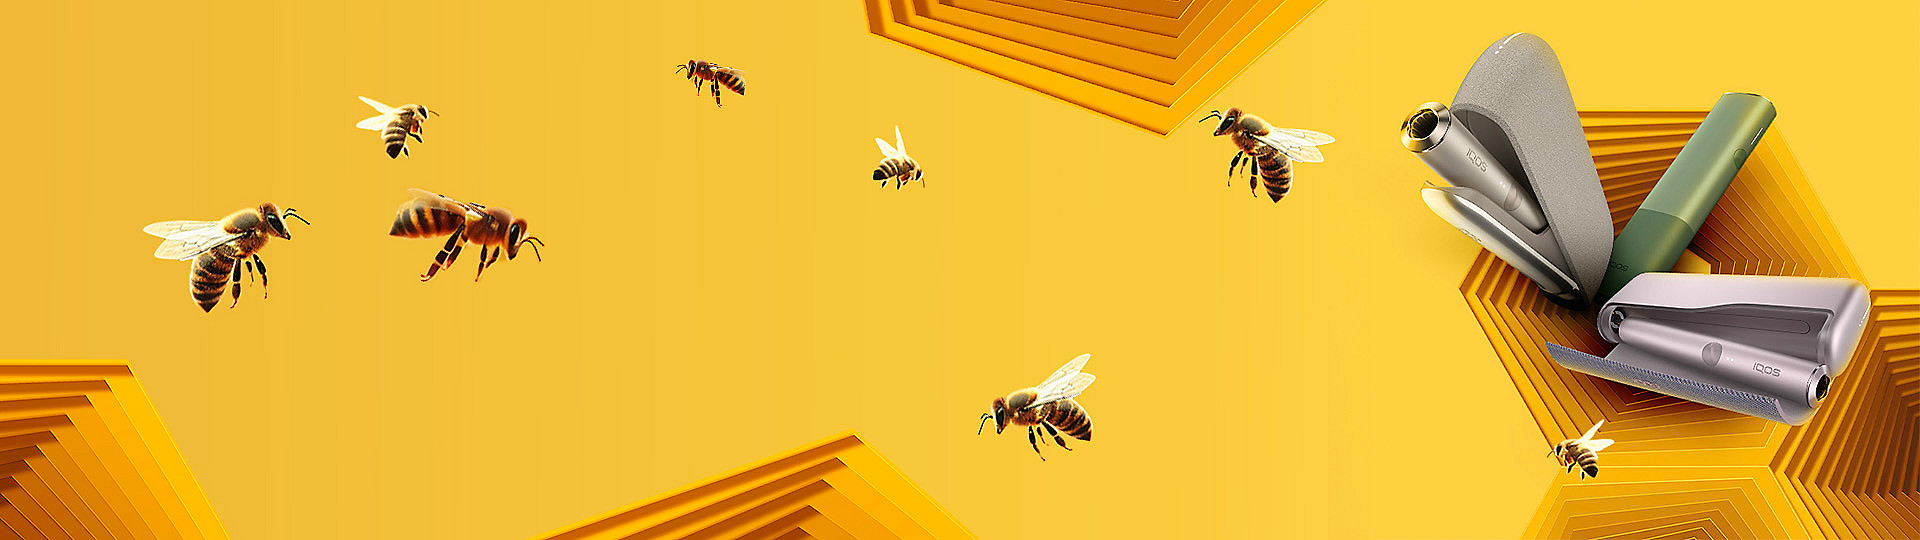 Včely na žlutém pozadí a zařízení IQOS